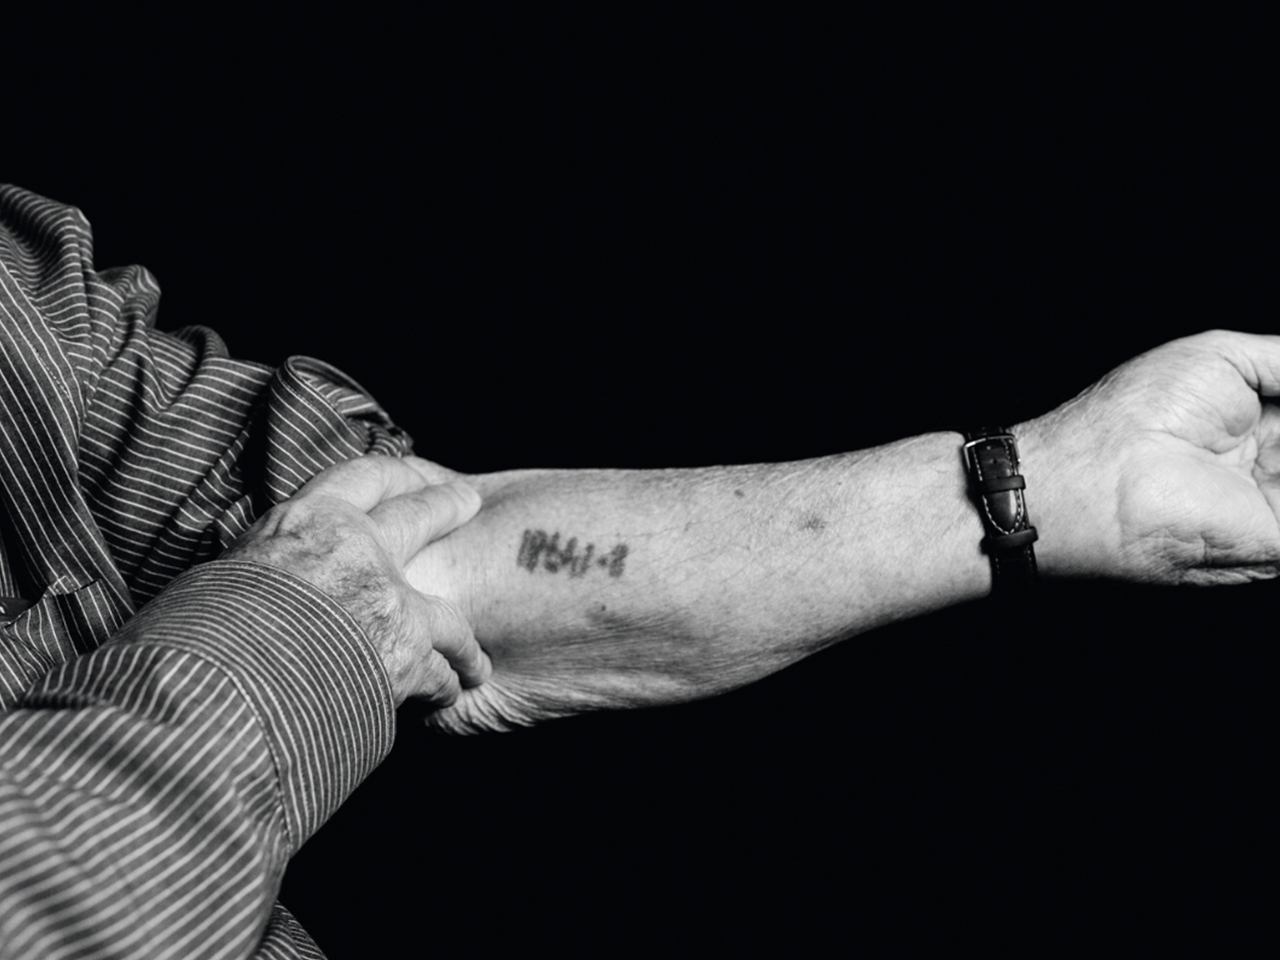 Ein Überlebender zeigt seinen Arm mit einer eintätowierten Häftlingsnummer